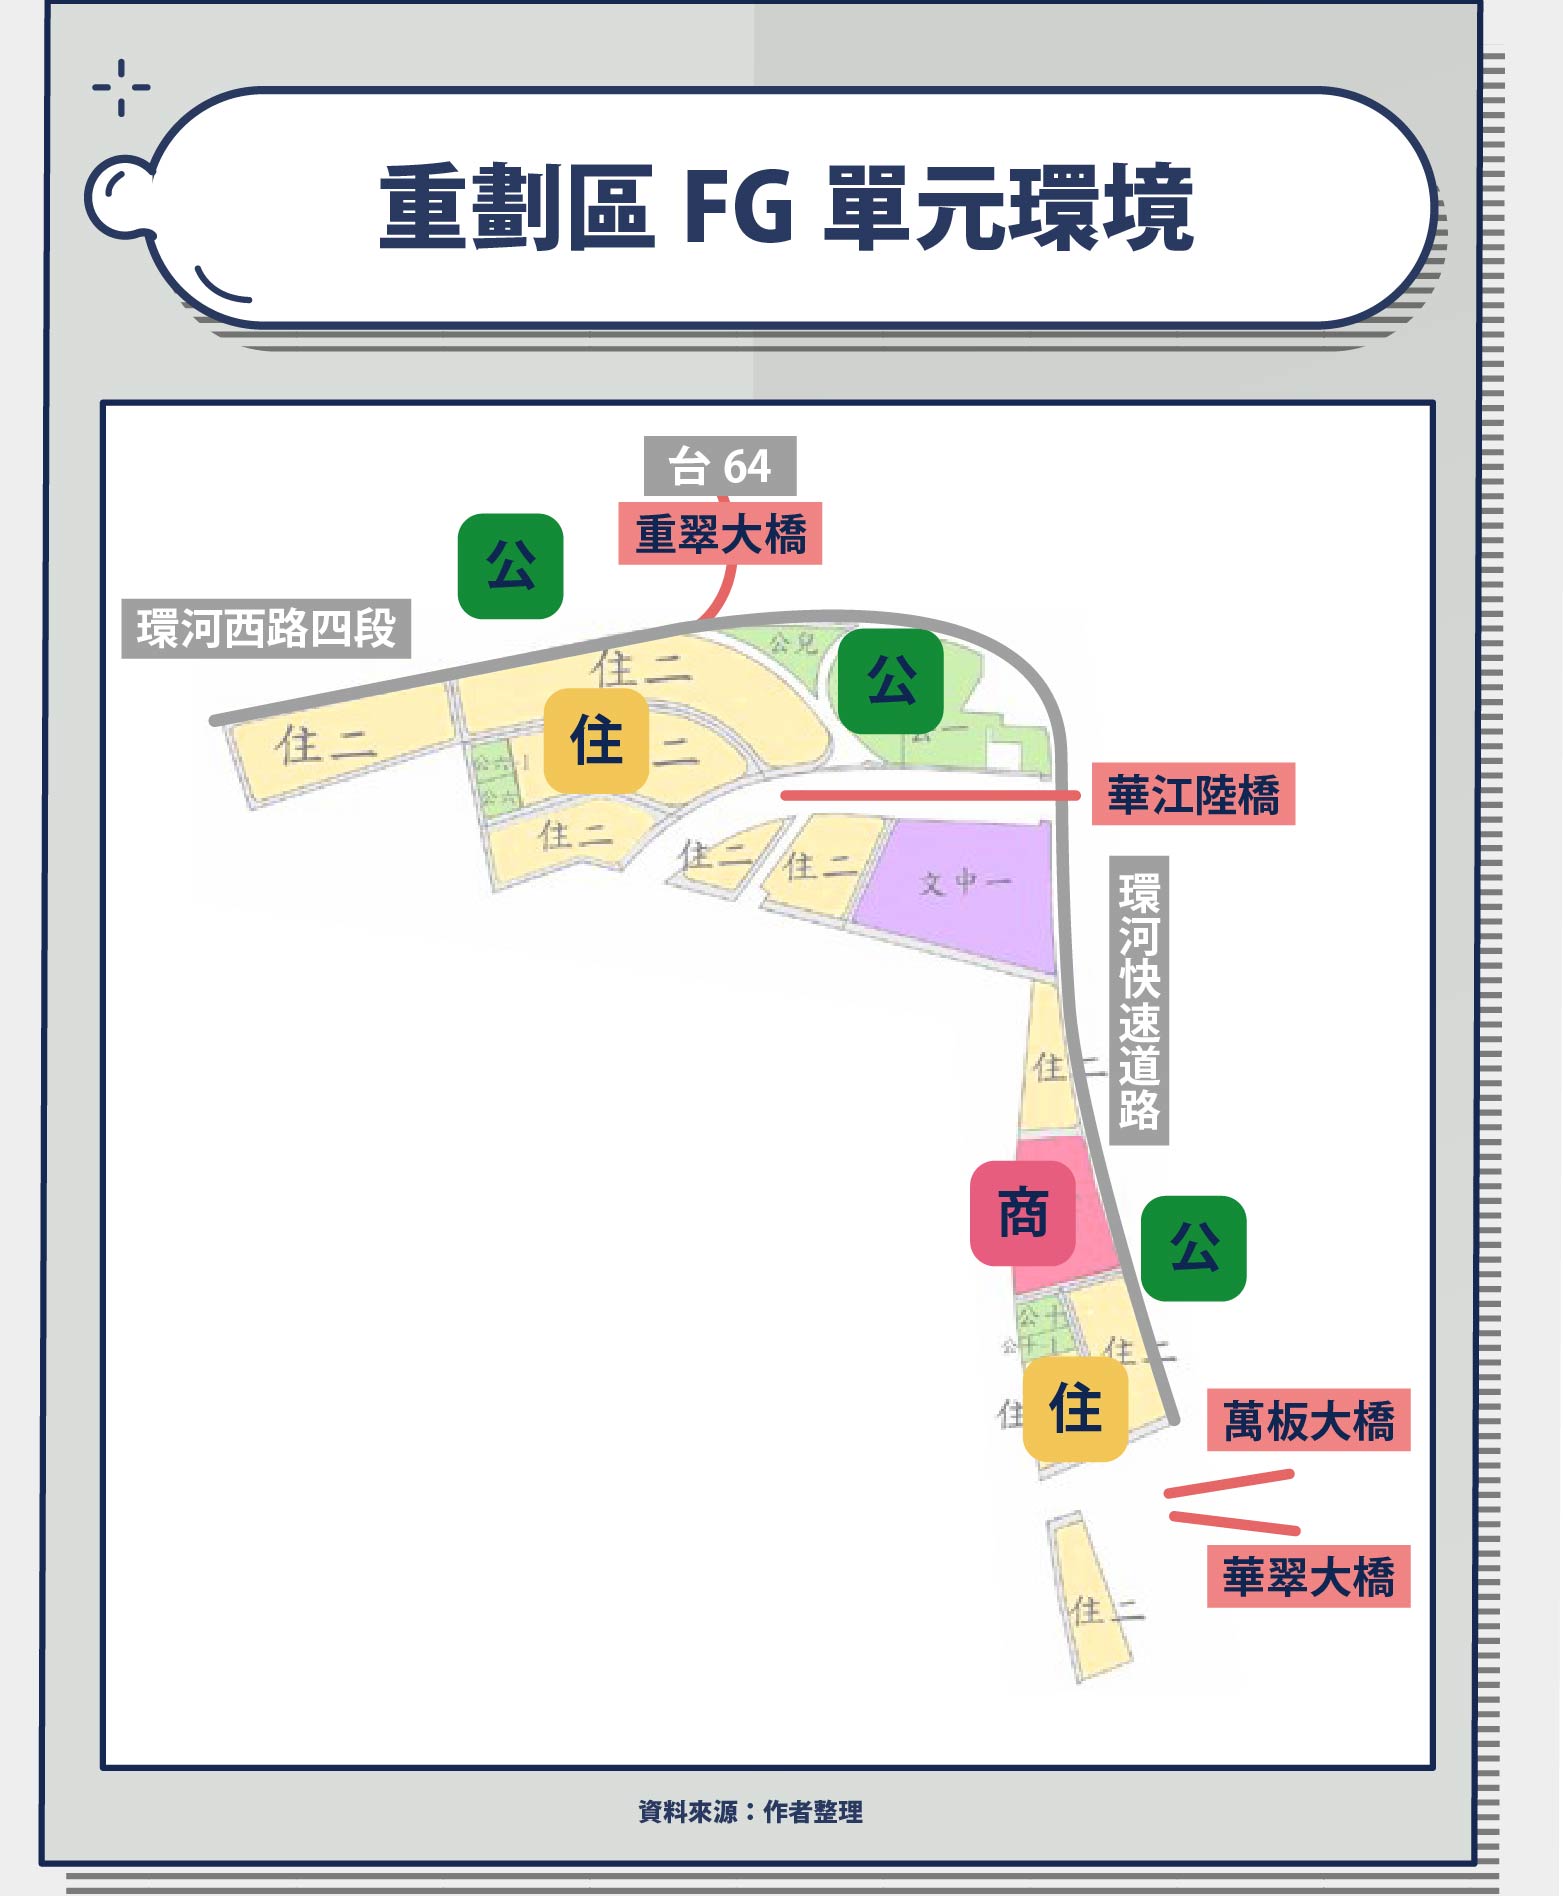 FG 單元就是一個回力鏢形狀的區塊，被兩旁的華江河濱公園包夾著，所以休閒空間也是不用擔心的（甚至還有一塊賞鳥綠地呢）。整體而言的土地區用分區也算是乾淨，大部分面積都是住宅跟綠地，還留有一座學校的預定地。